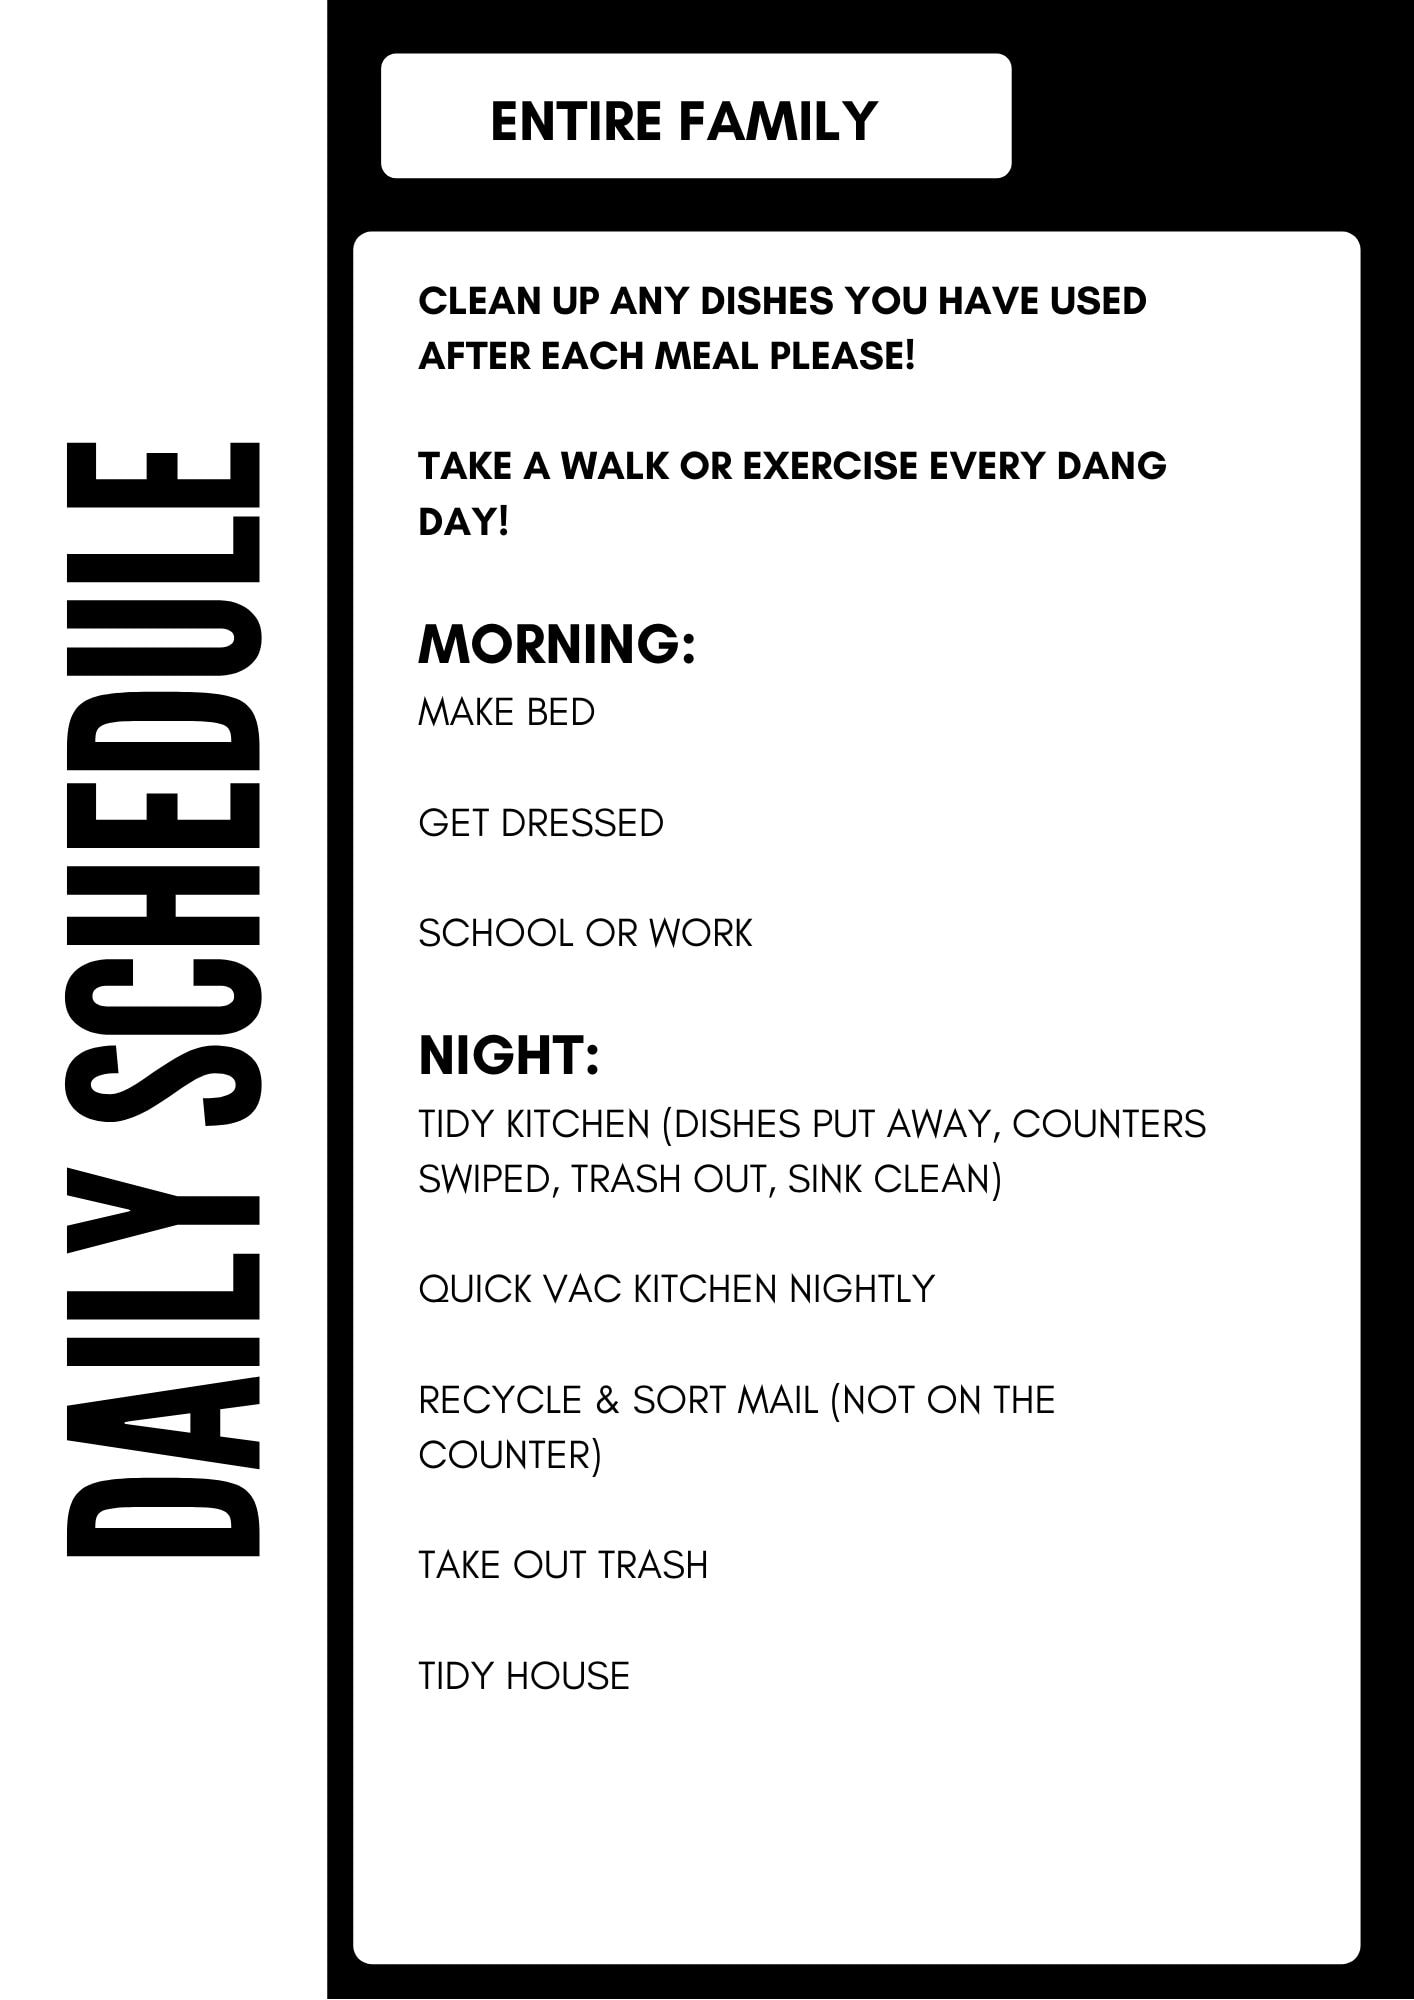 Daily Tasks During Quarantine